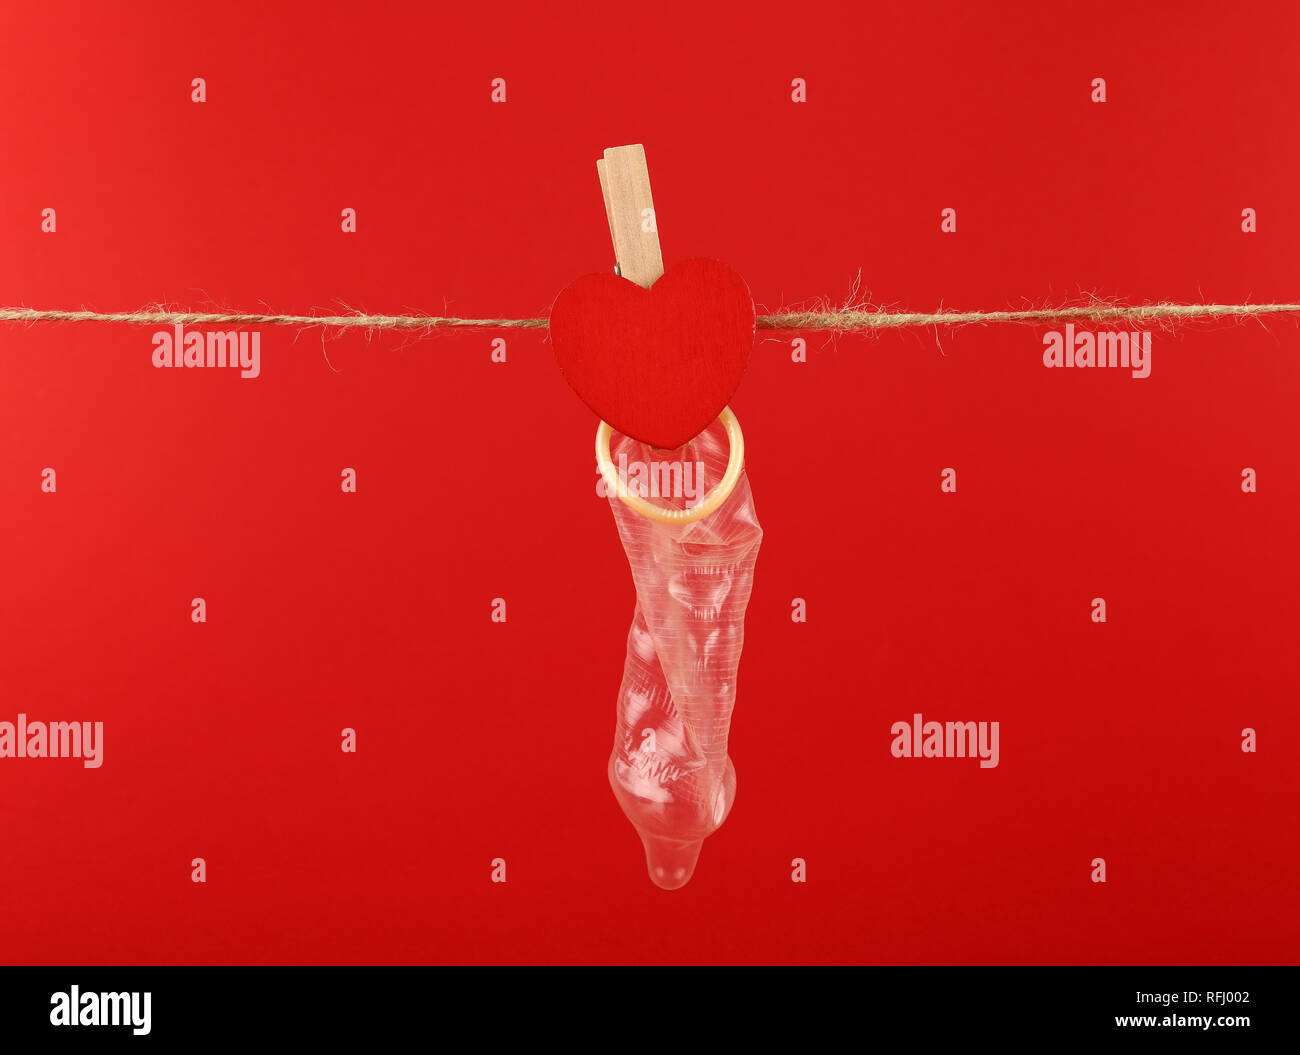 Schließen Sie ein Kondom hängen an Garn Wäscheleine mit Holz Wäscheklammer mit herzförmigen Schild über Roter Hintergrund mit Kopie Raum, Low Angle Seite vi. Stockfoto